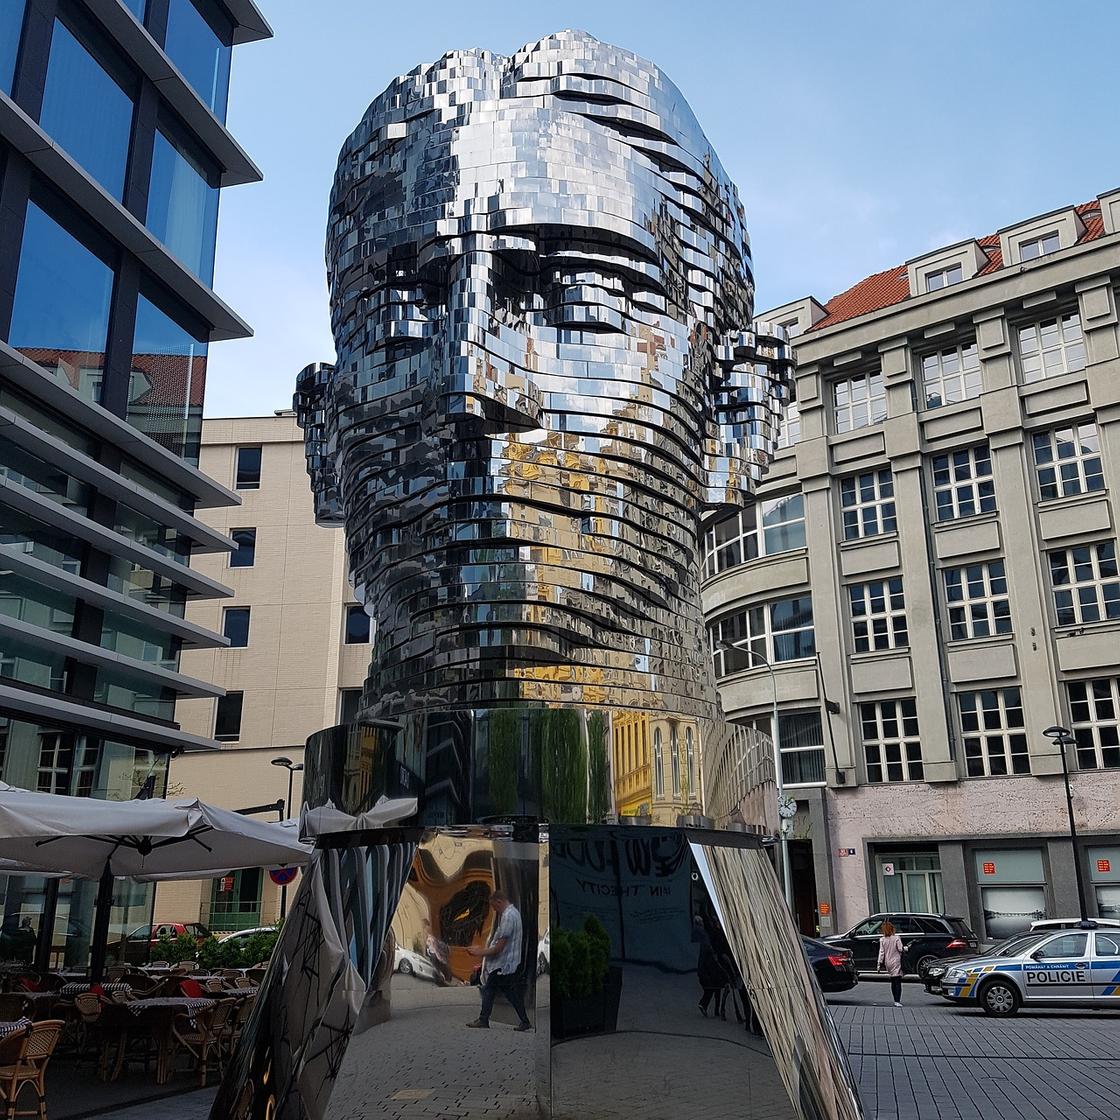 Металлическая движущаяся скульптура в виде головы Франца Кафки